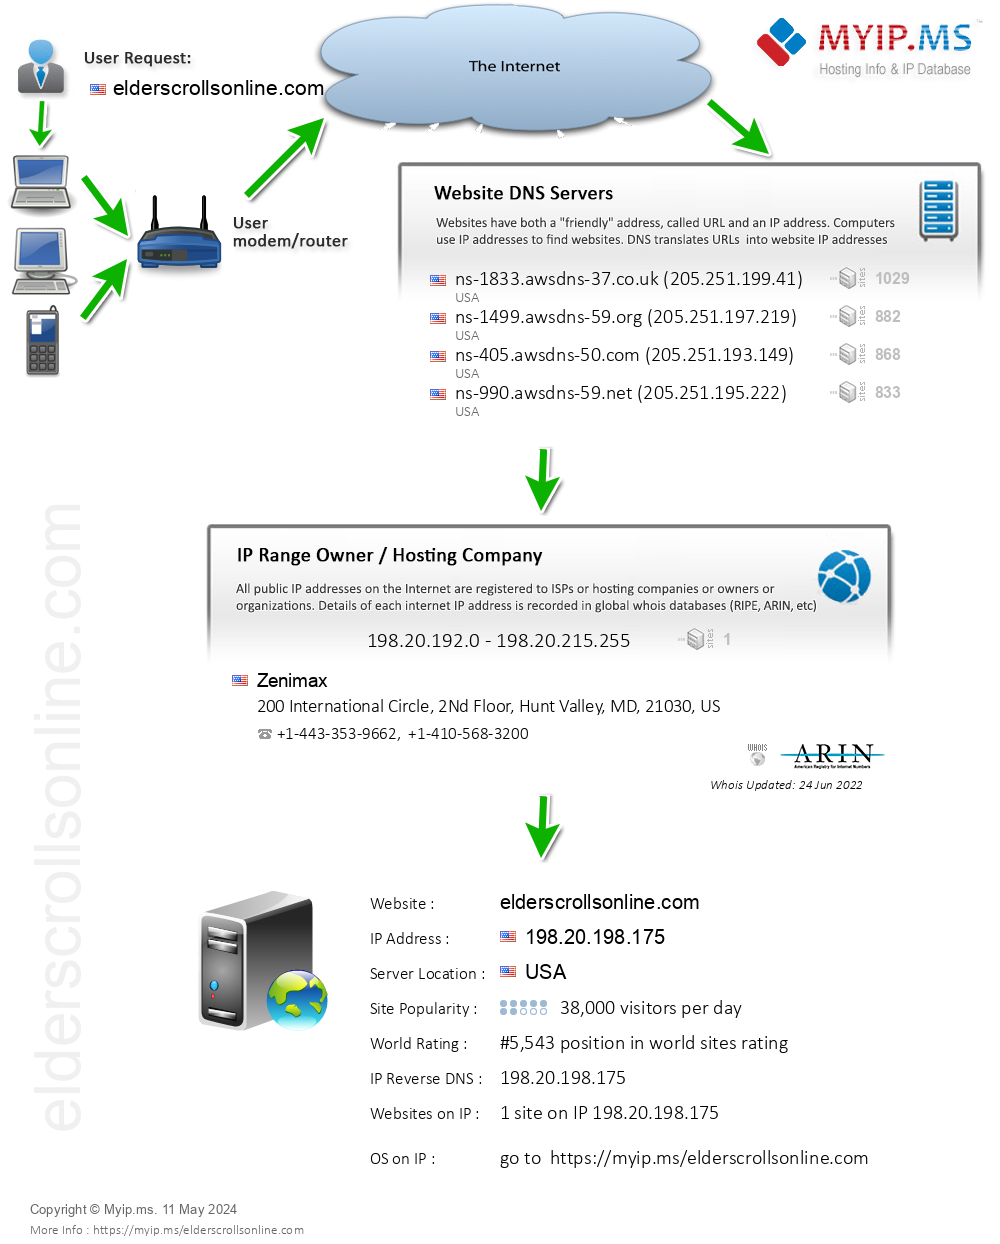 Elderscrollsonline.com - Website Hosting Visual IP Diagram